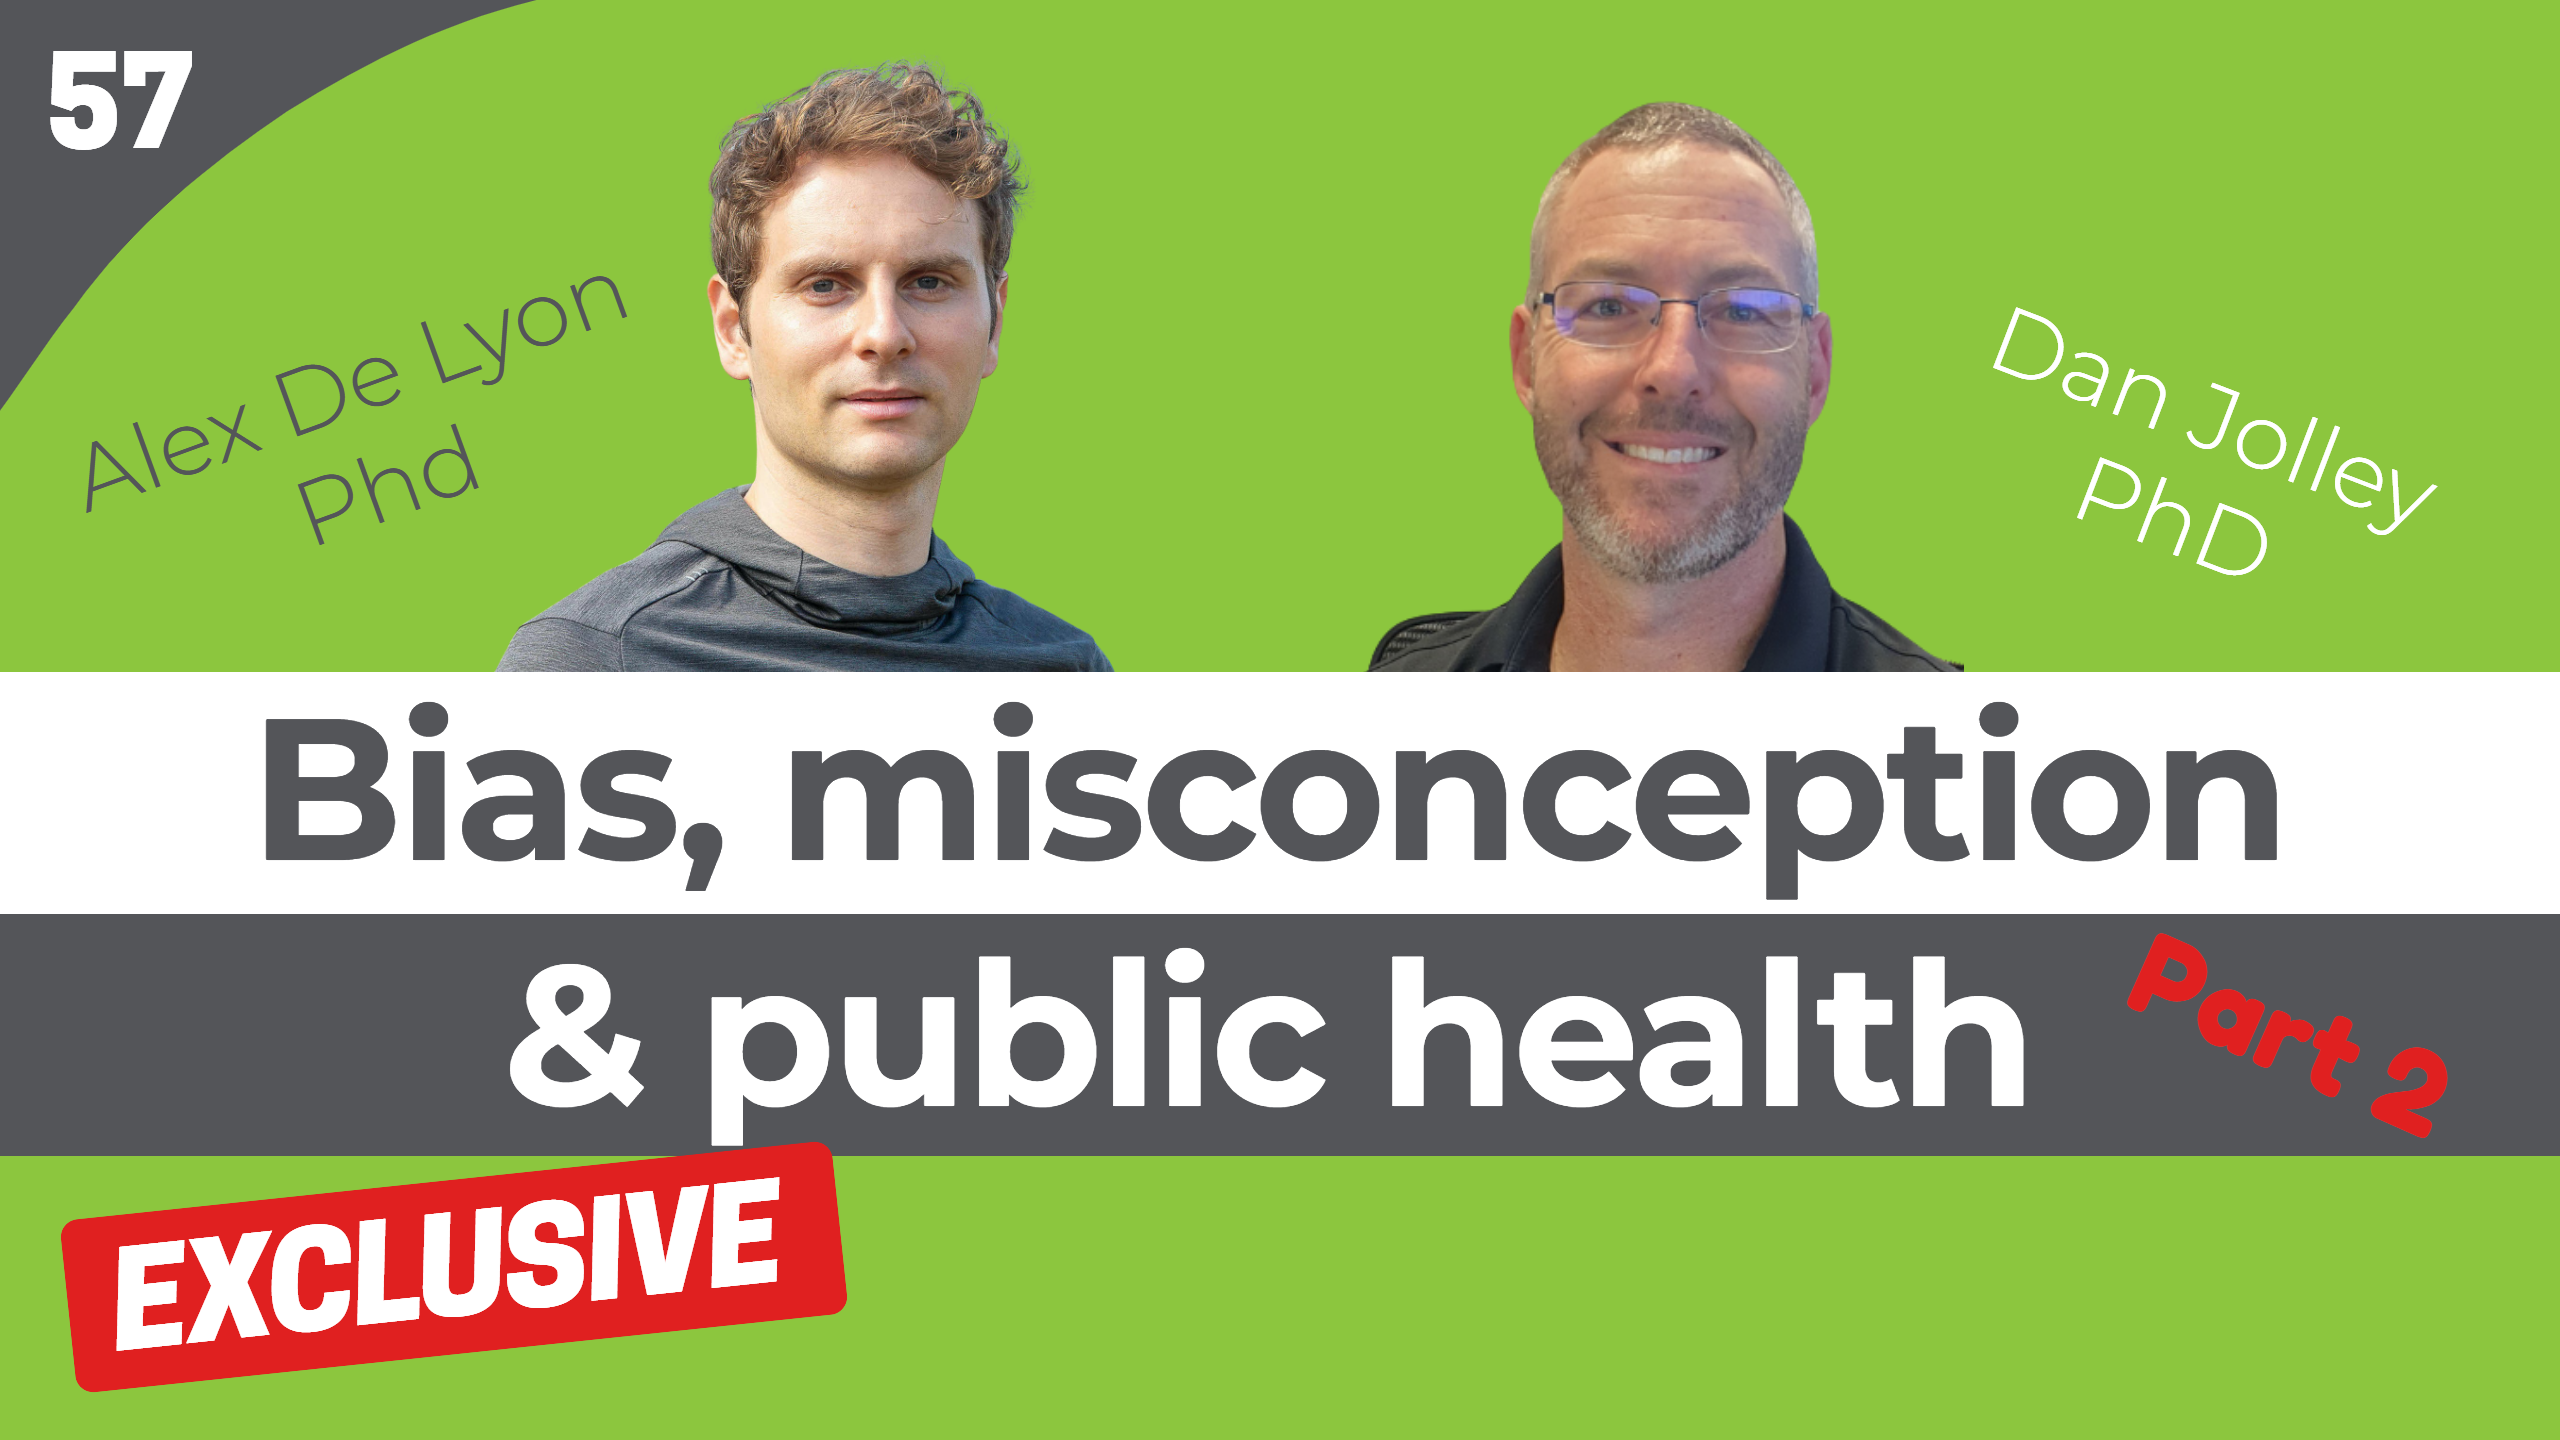 bias-misconception-public-health-dan-jolley-alex-de-lyon-fit-to-succeed-podcast